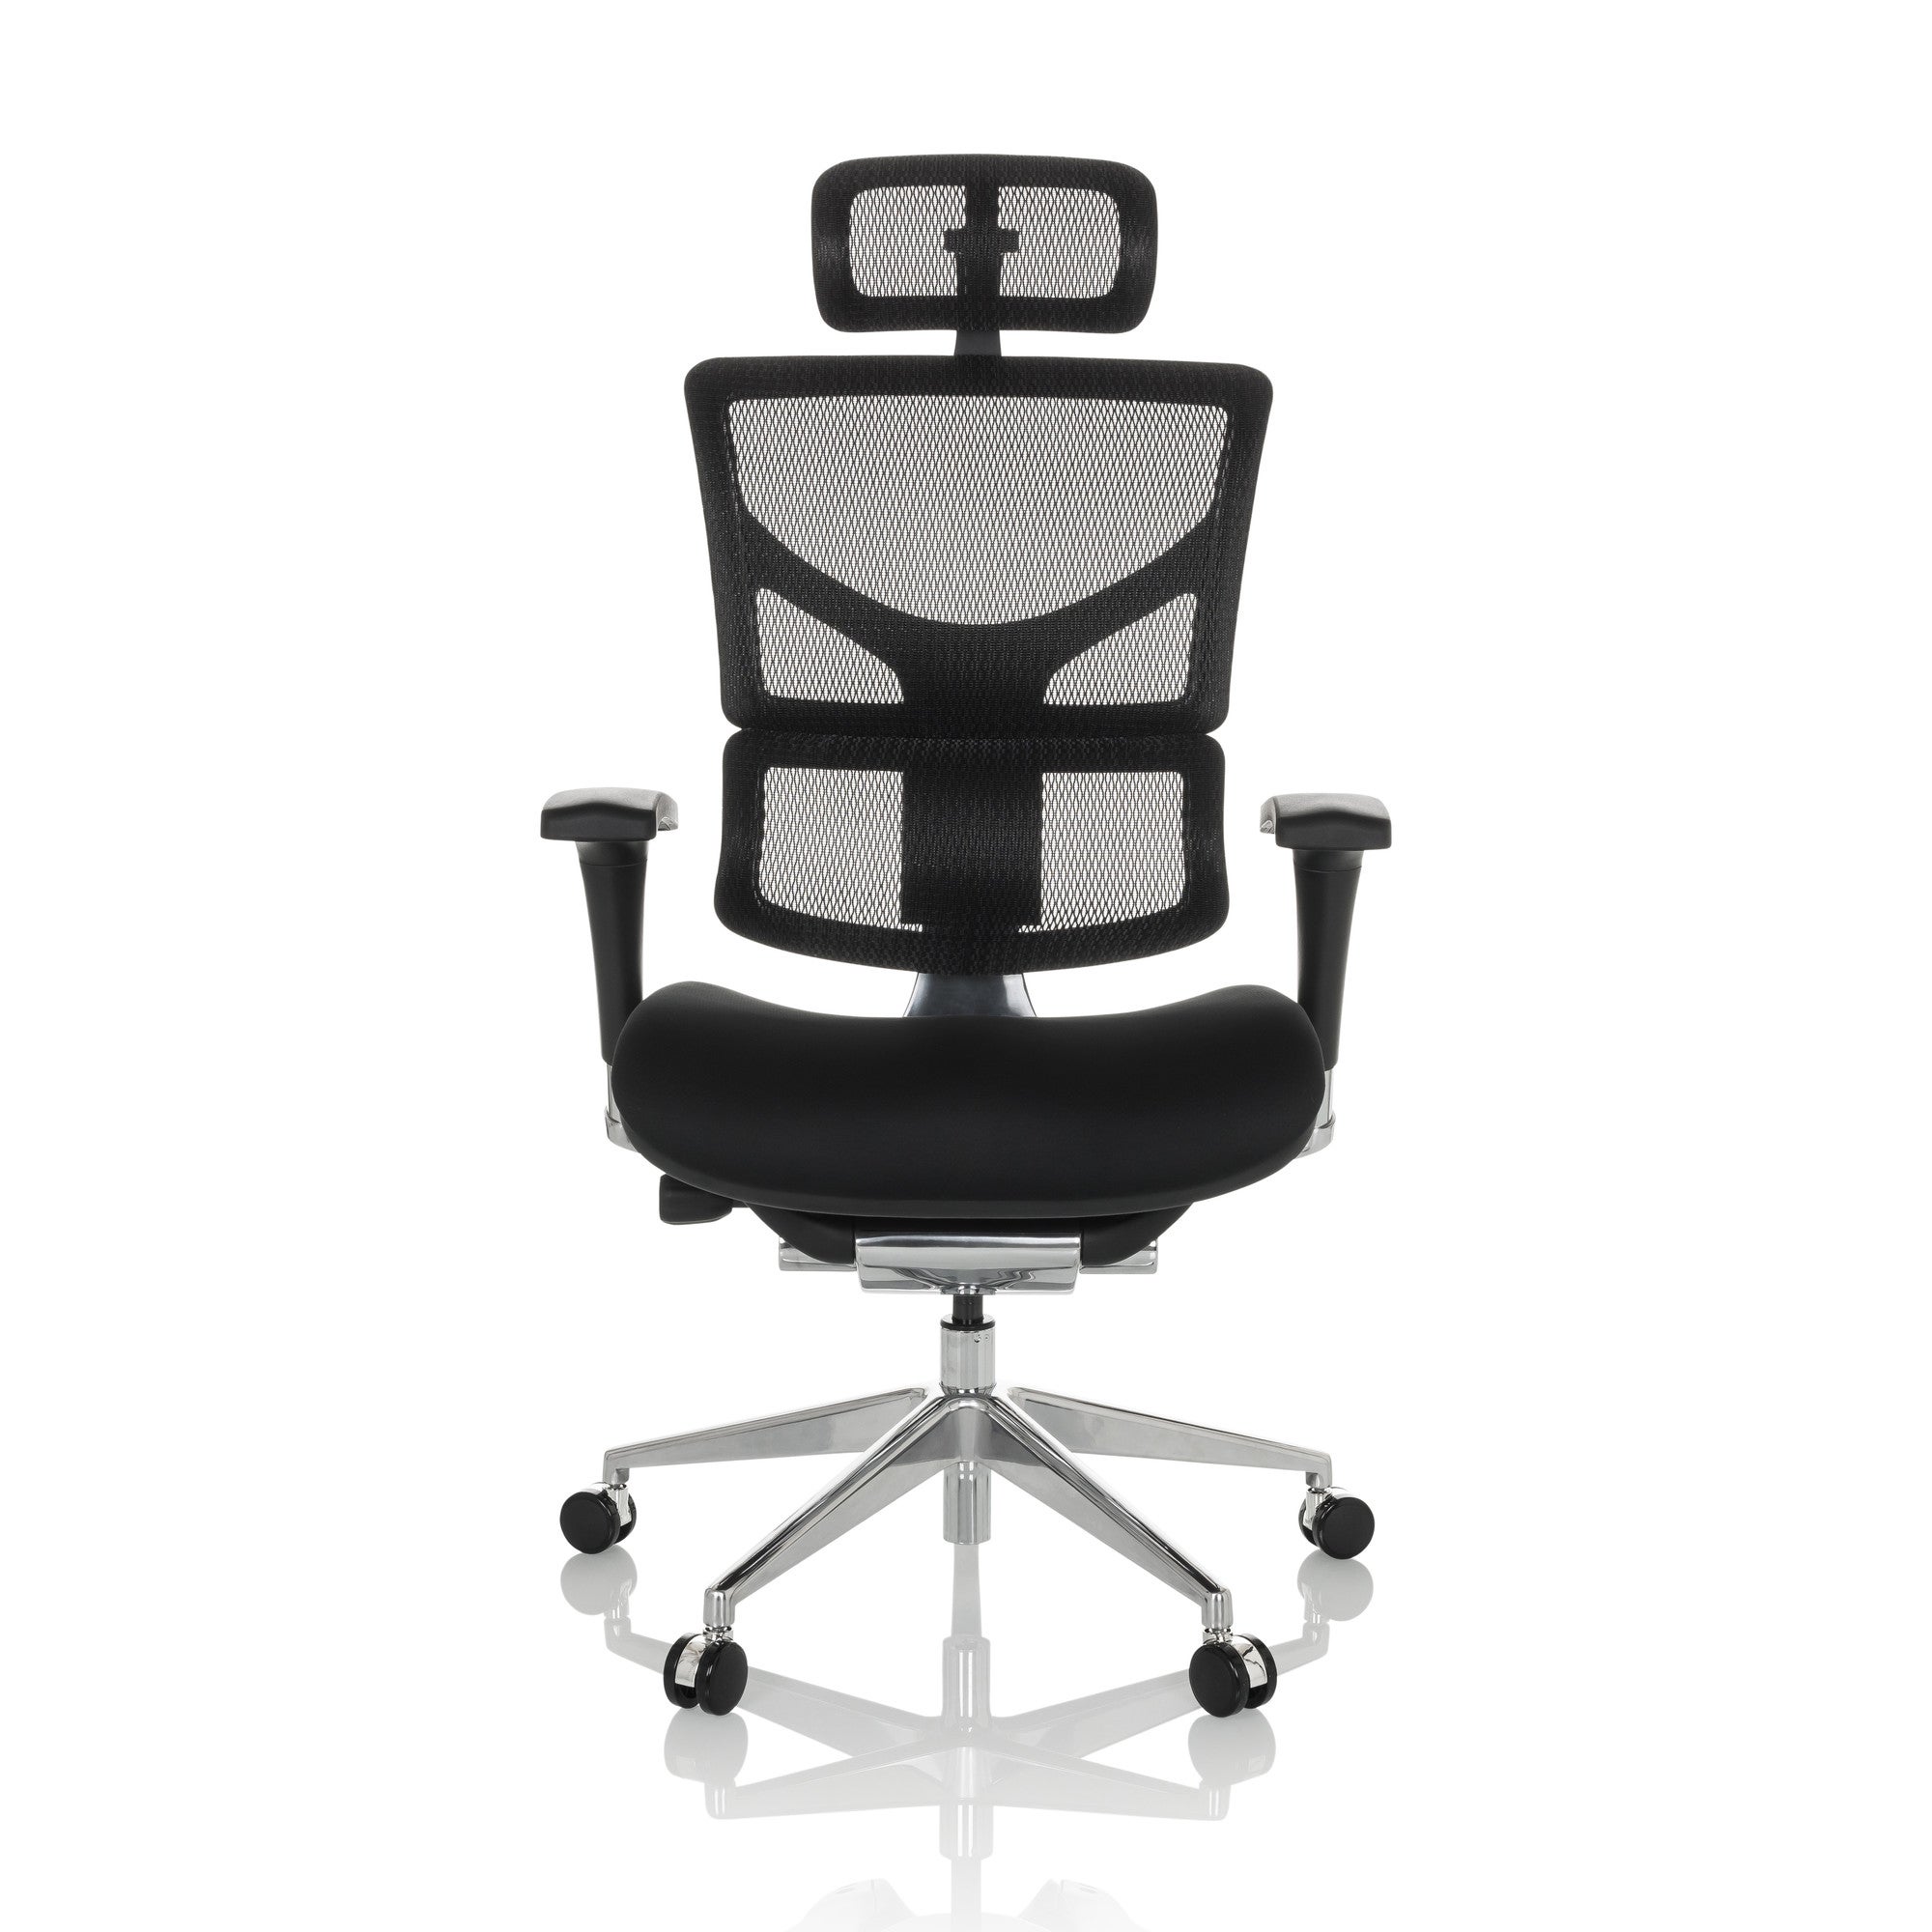 Mix sedia ergonomica con schienale alto con braccioli